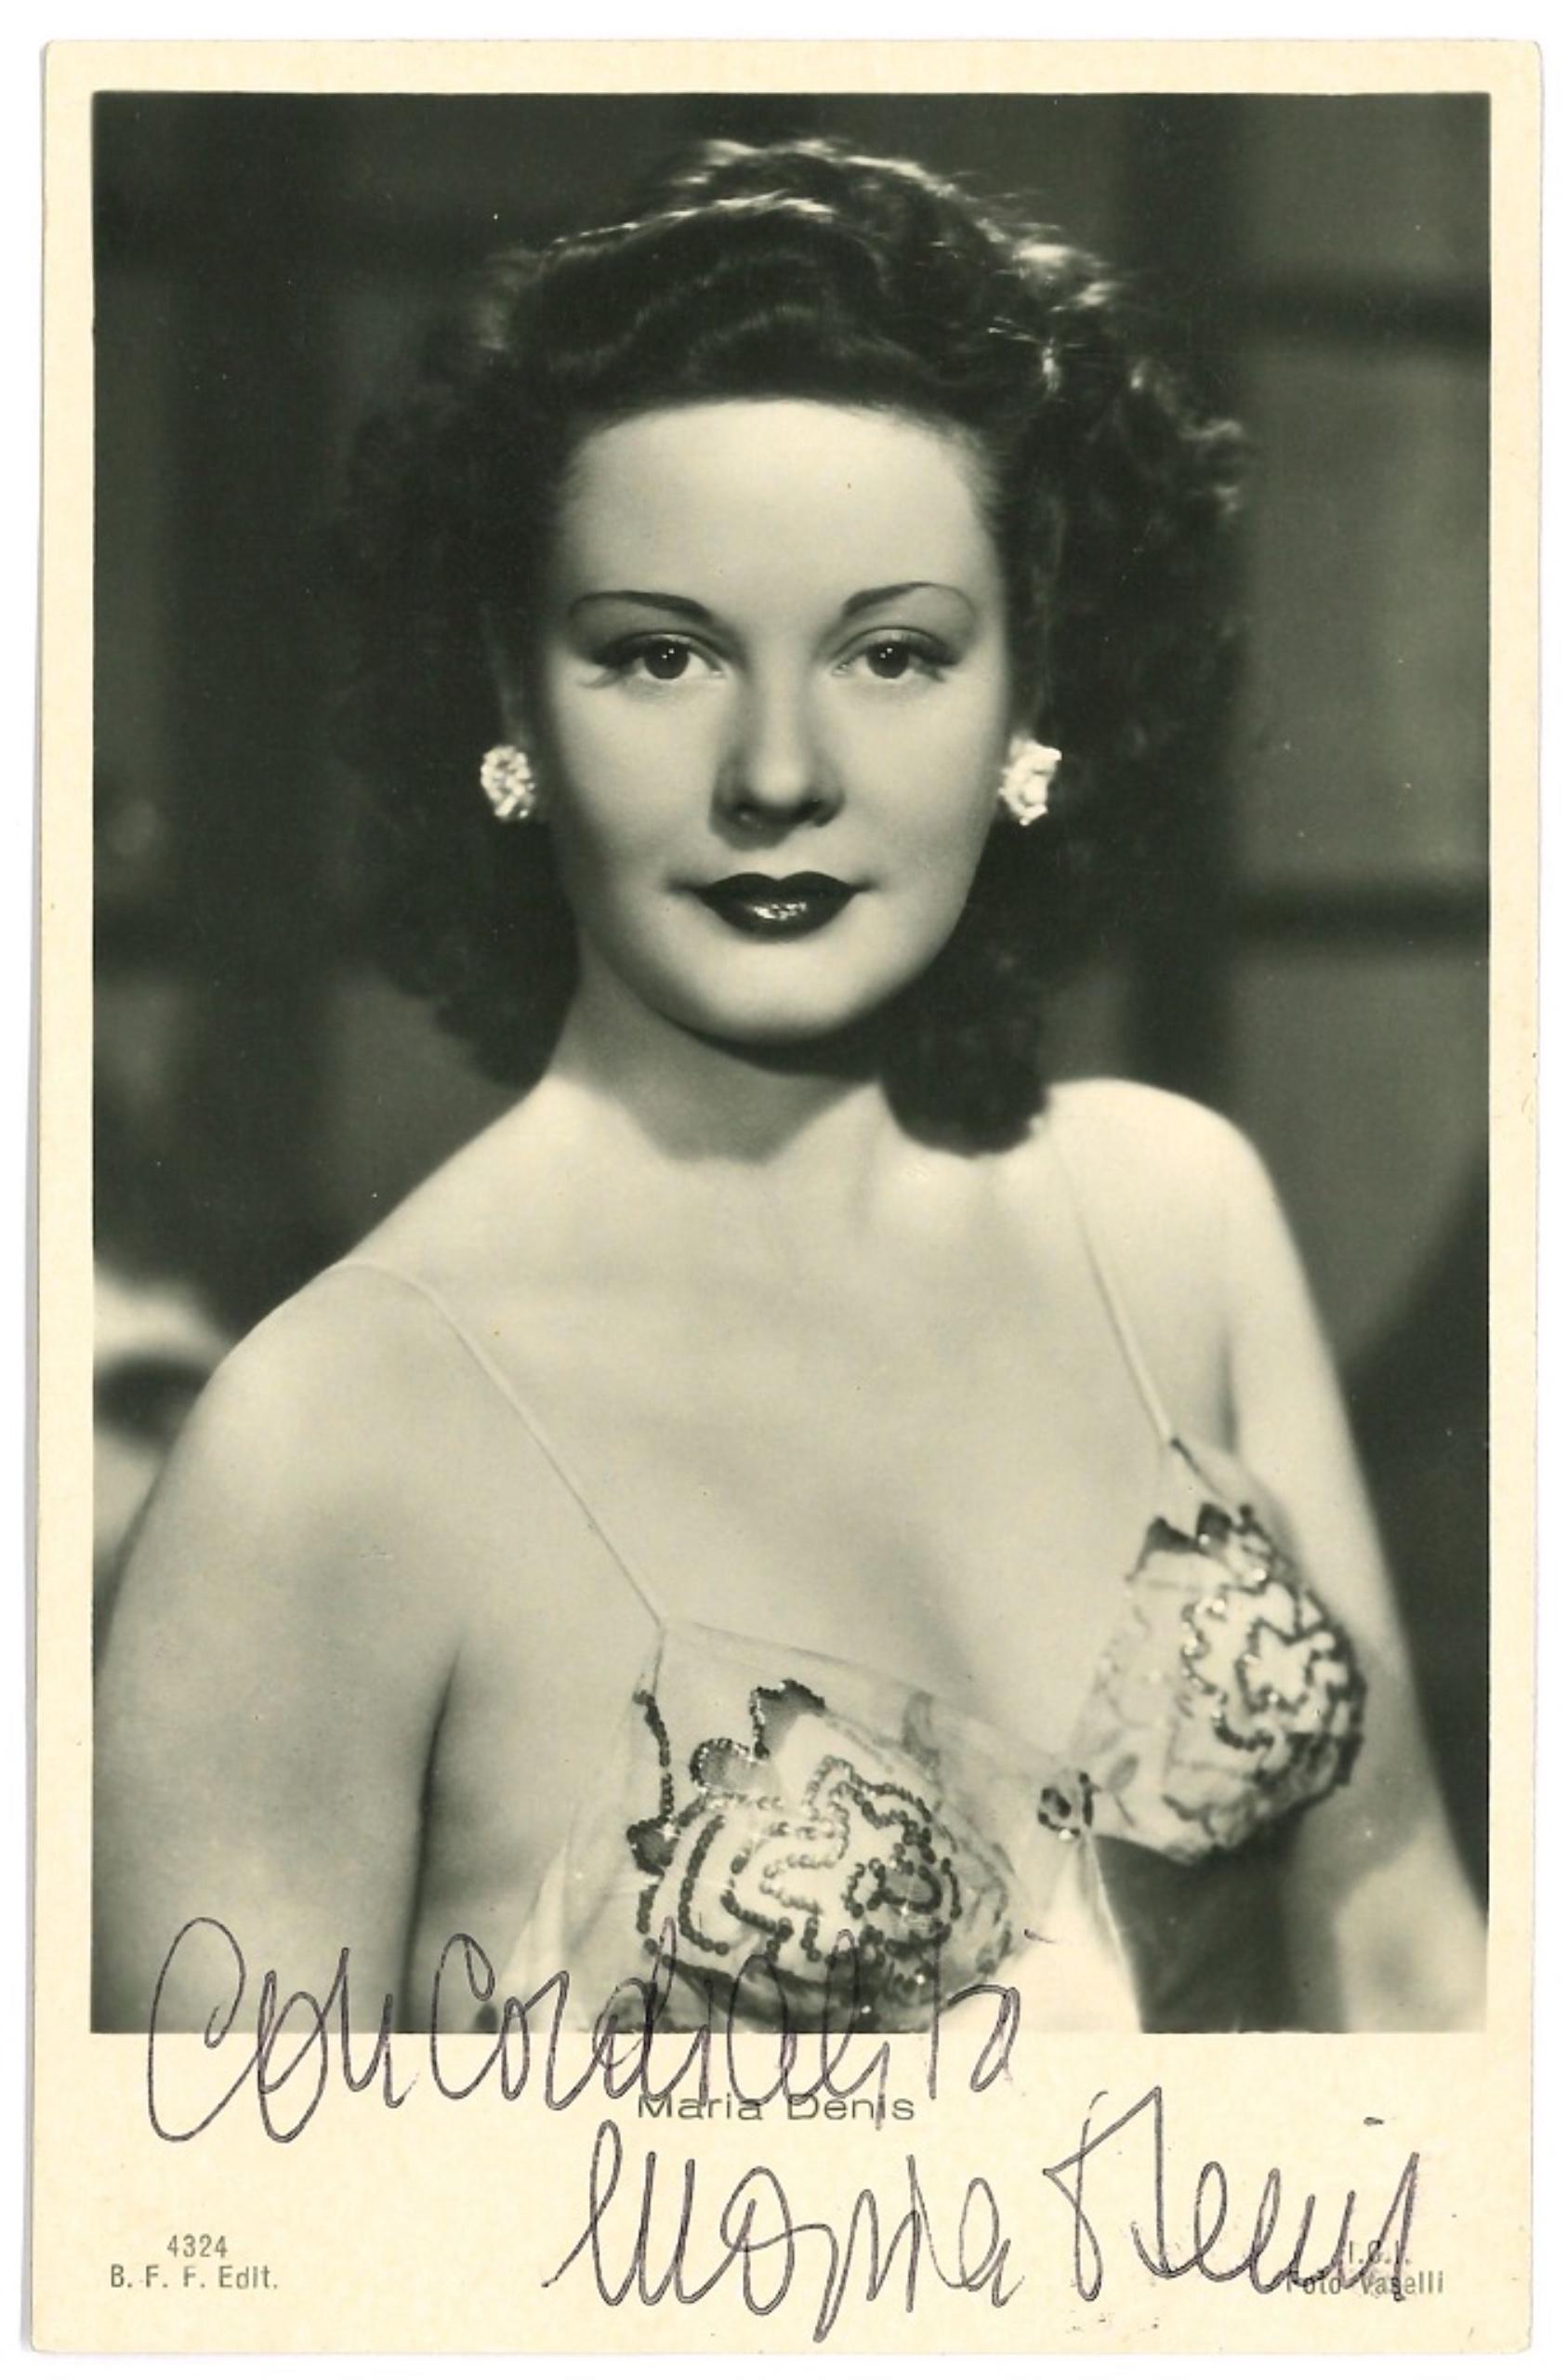 Autographed Portrait of Maria Denis - Original b/w Postcard - 1960s